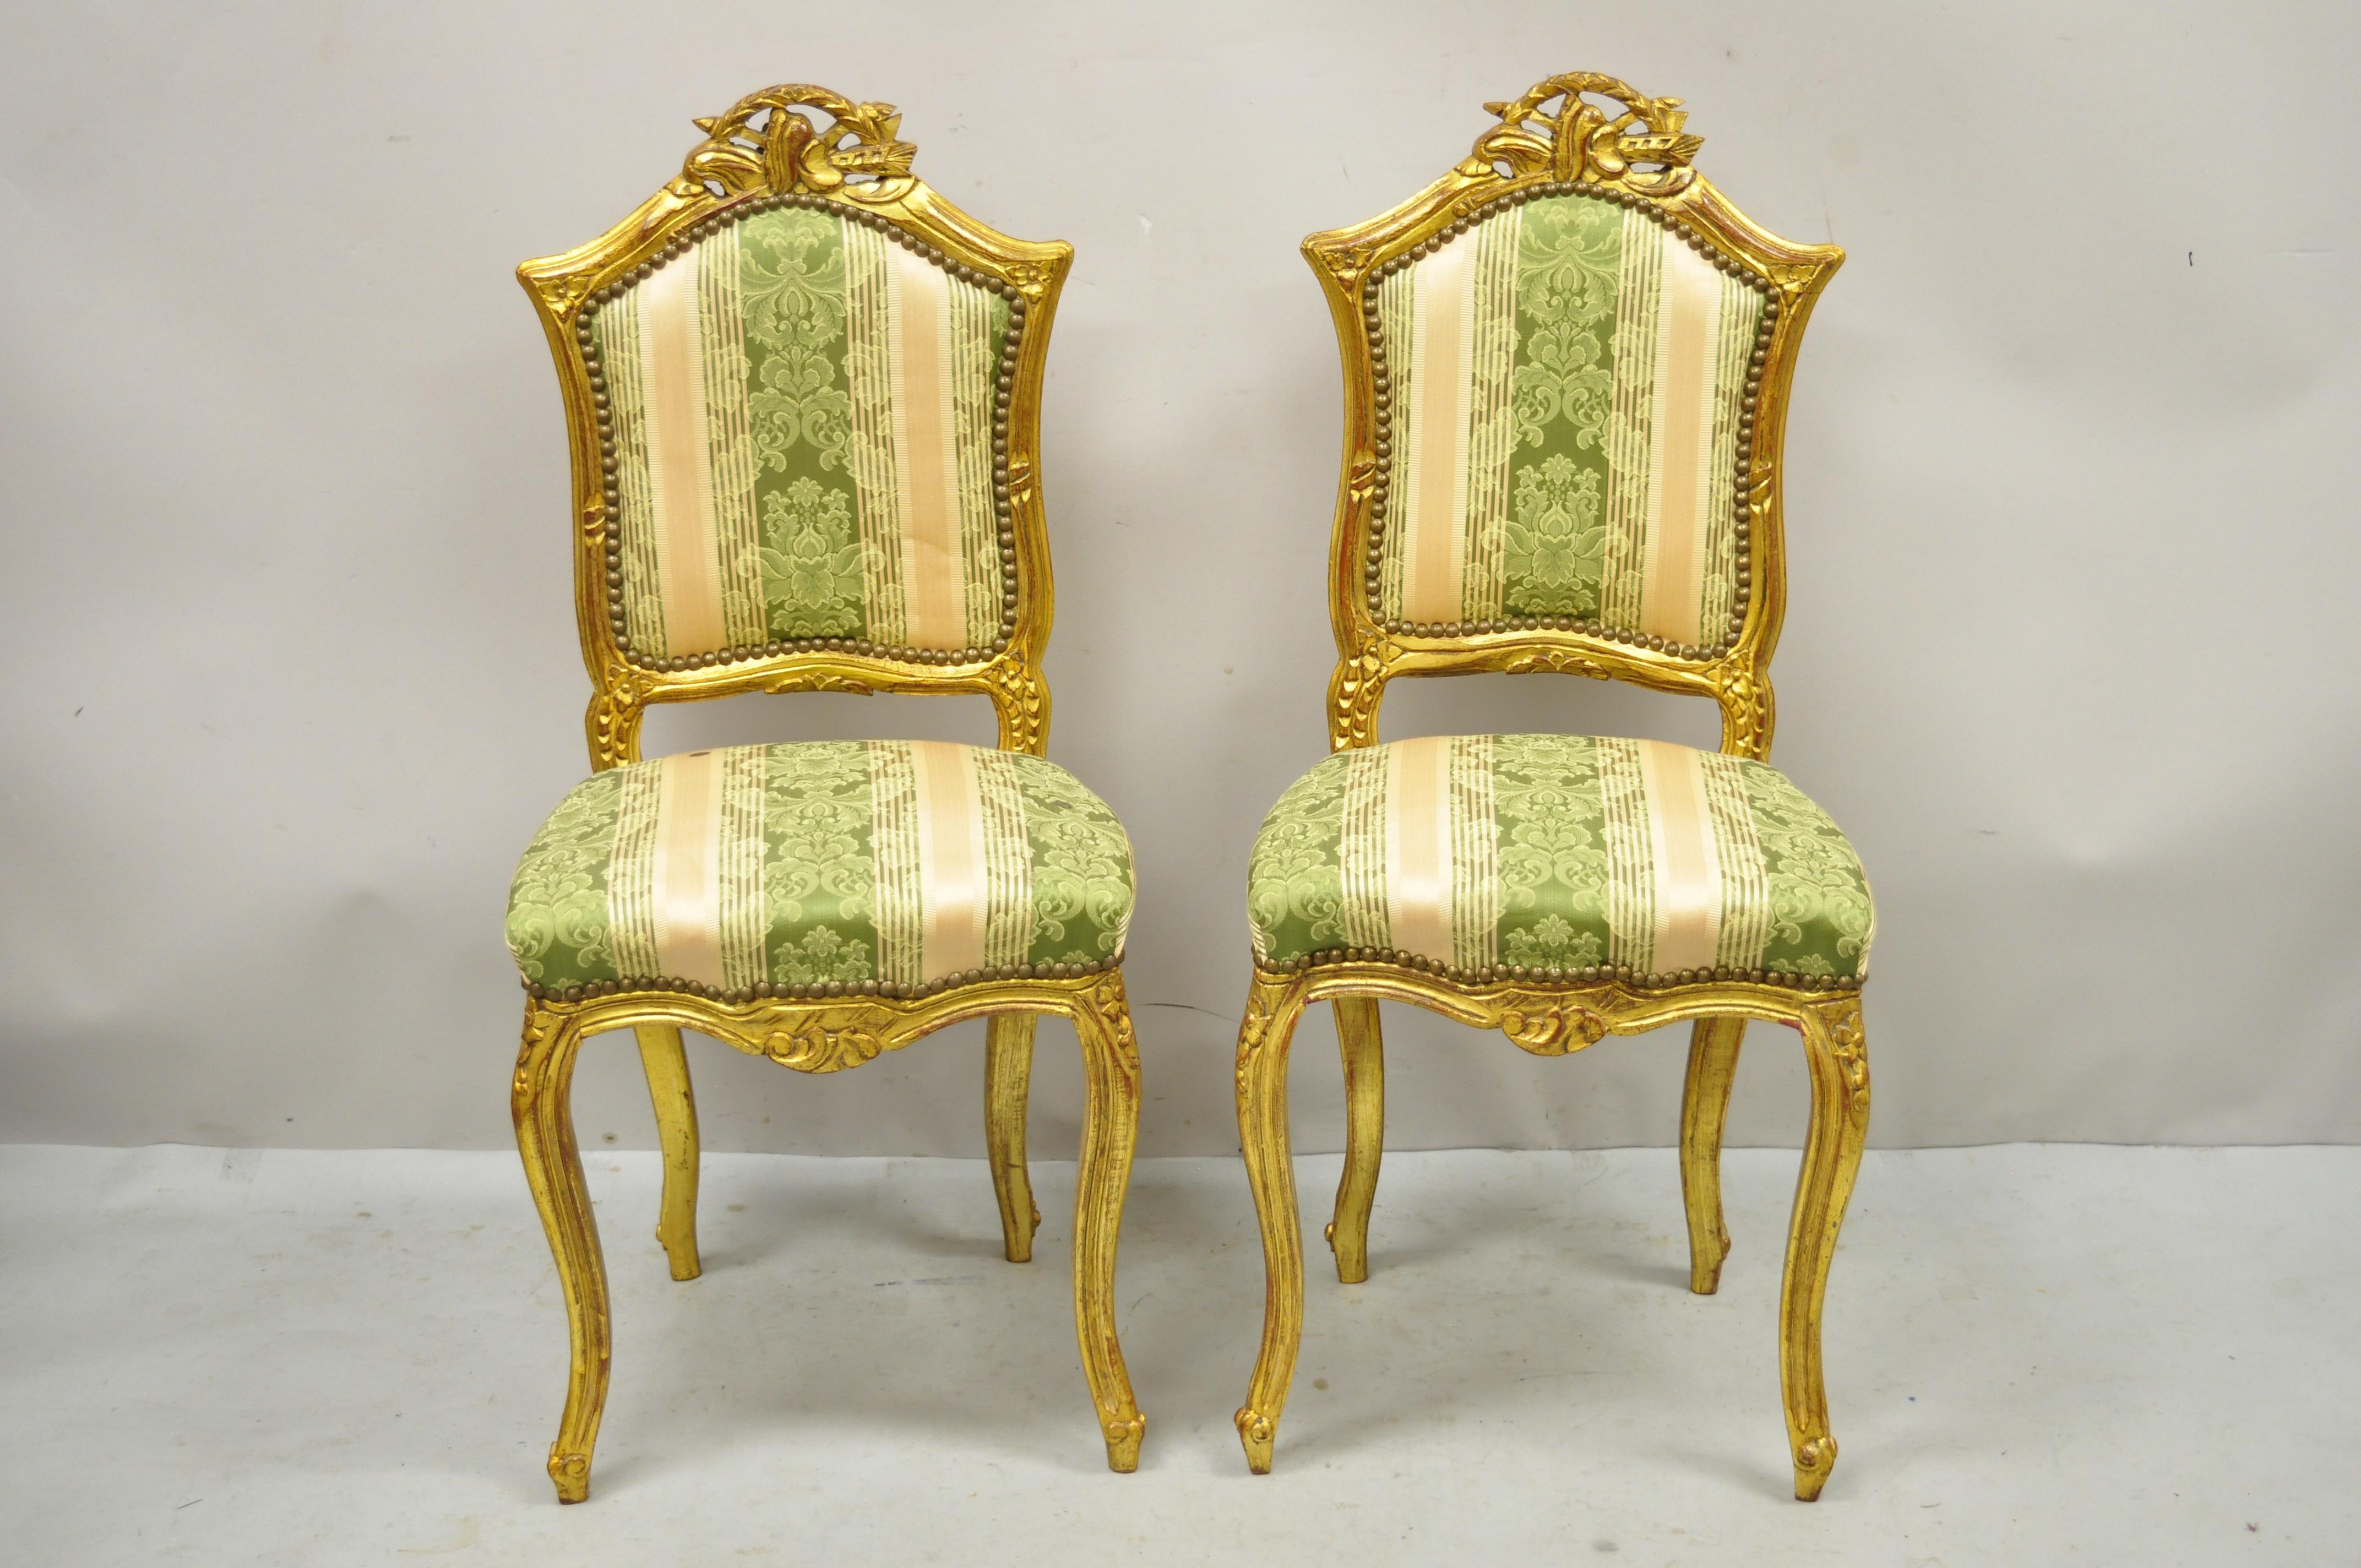 Vintage Französisch Louis XV Stil Goldholz vergoldet geschnitzt Boudoir Stühle - ein Paar. Artikel verfügt über Gold vergoldet, Massivholzrahmen, schön geschnitzte Details, Cabriole Beine, großen Stil und Form. Schönes kleines Boudoir-Format. CIRCA